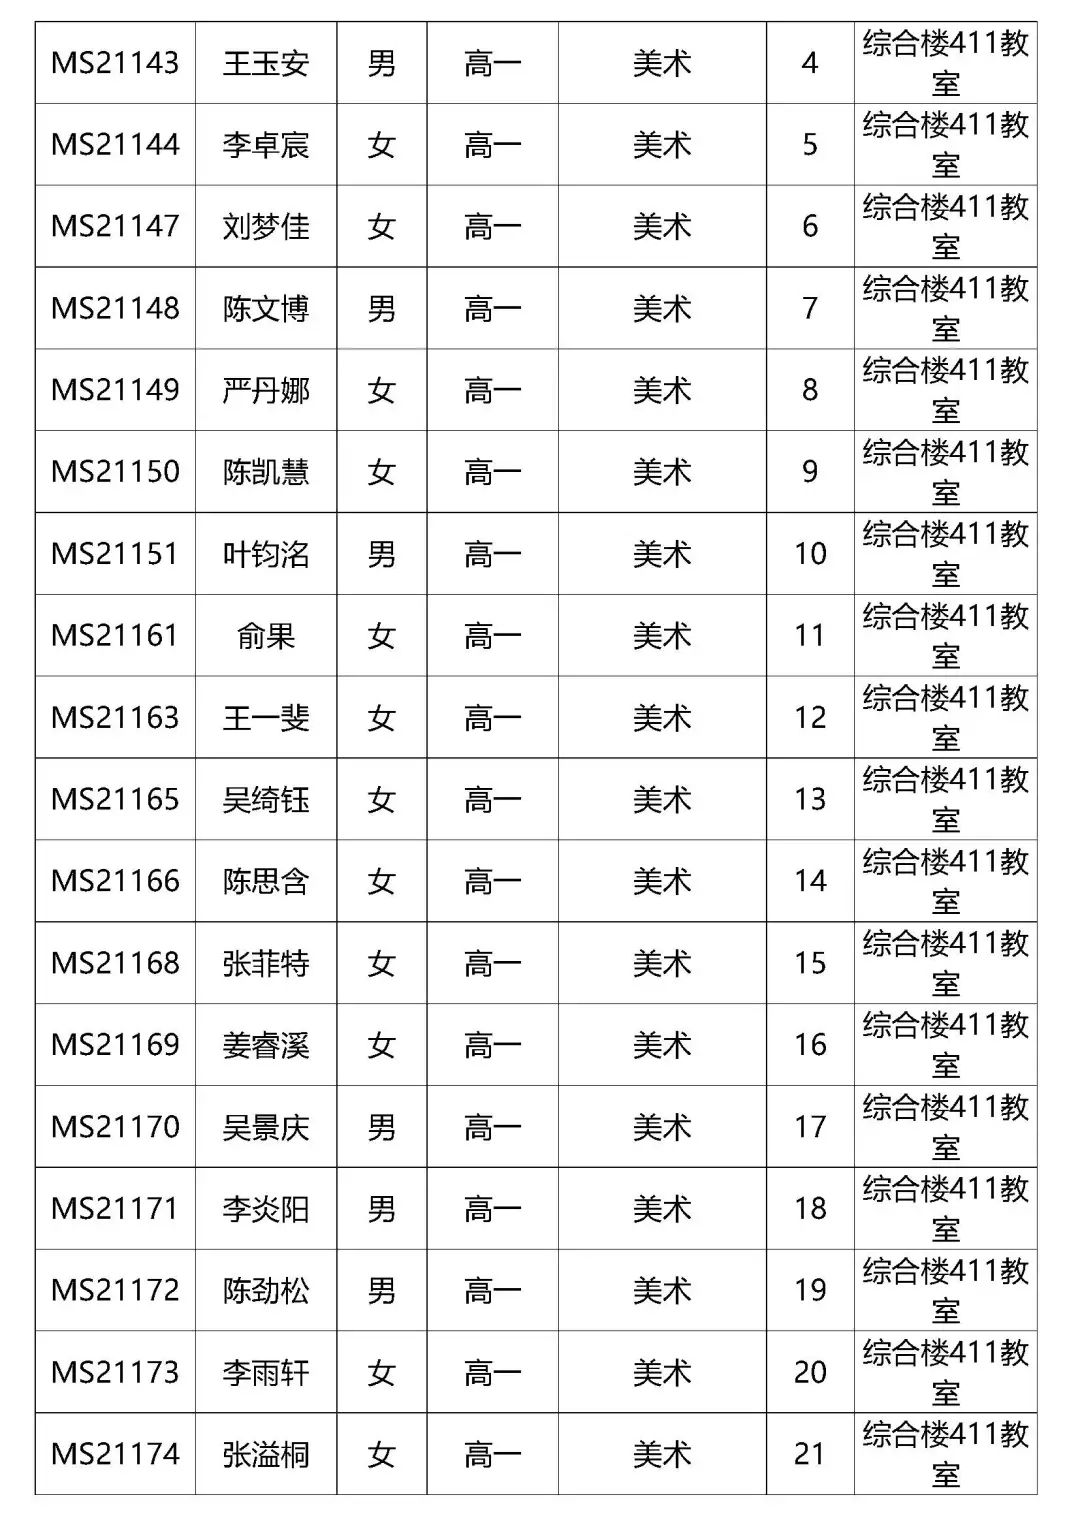 2021年深圳艺术学校招生考试文化课适应性教学教室安排